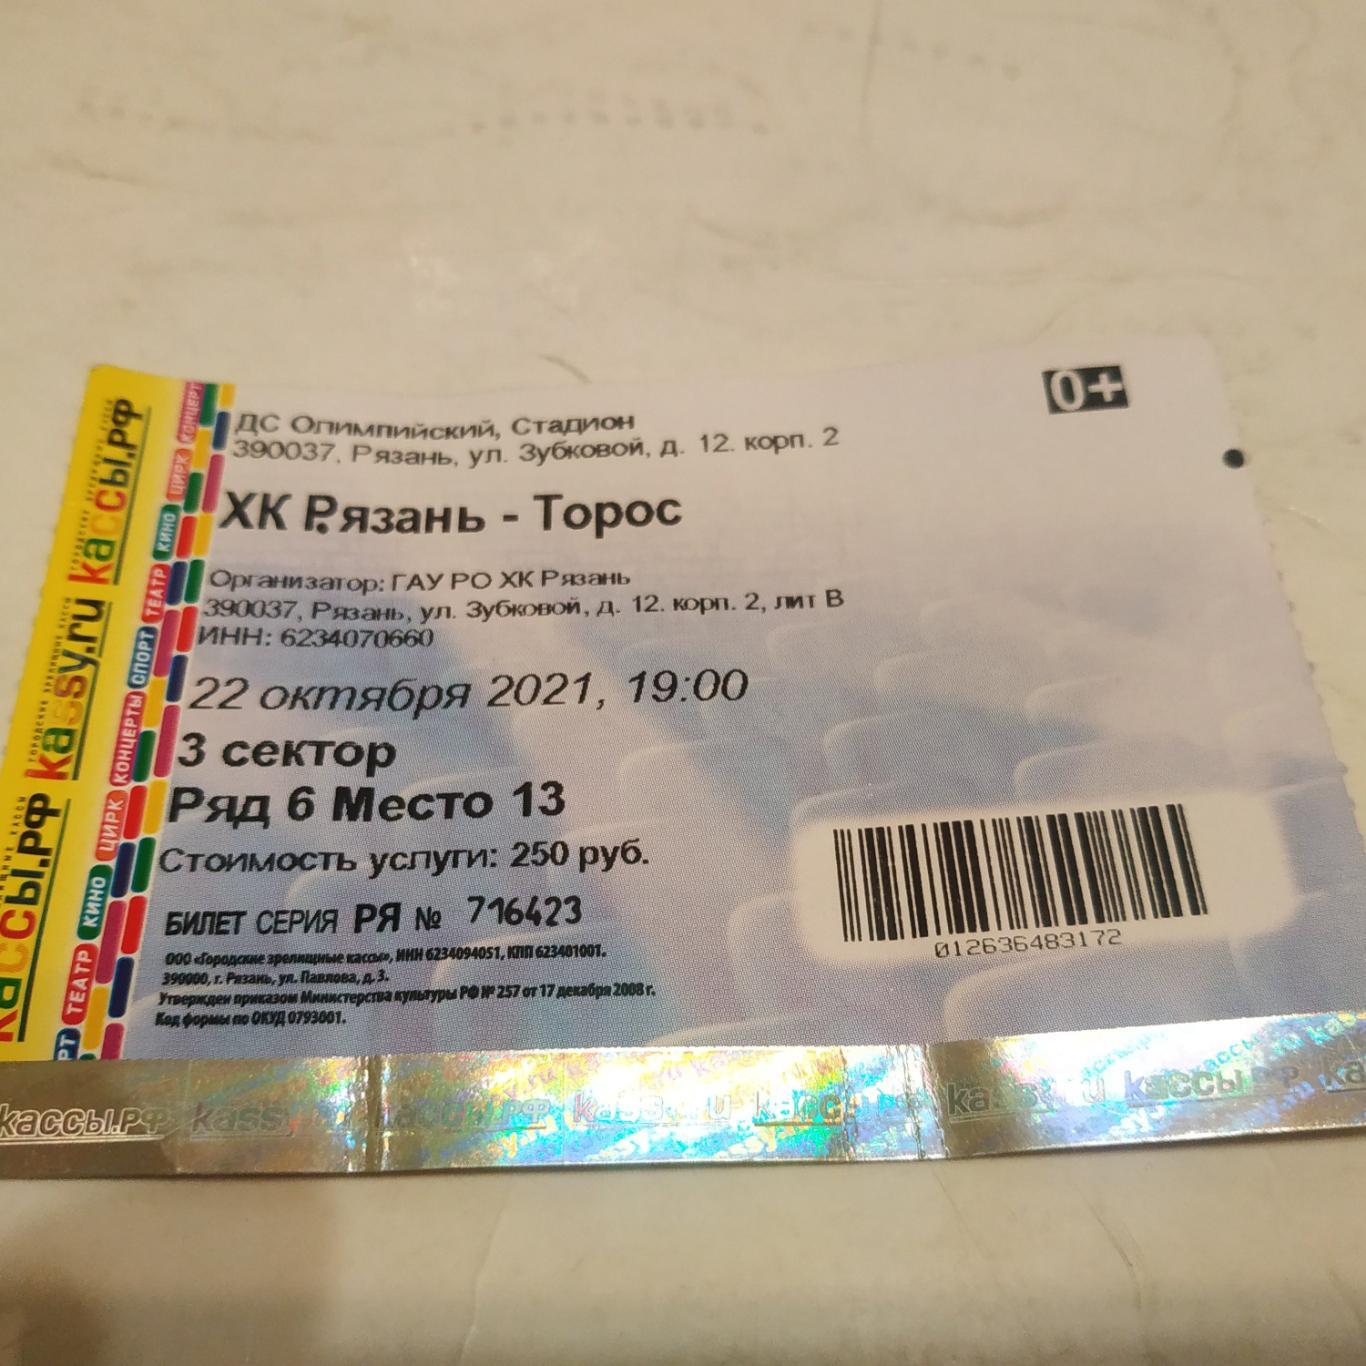 ХК Рязань - Торос (Нефтекамск) 22.10.2021.( билет)